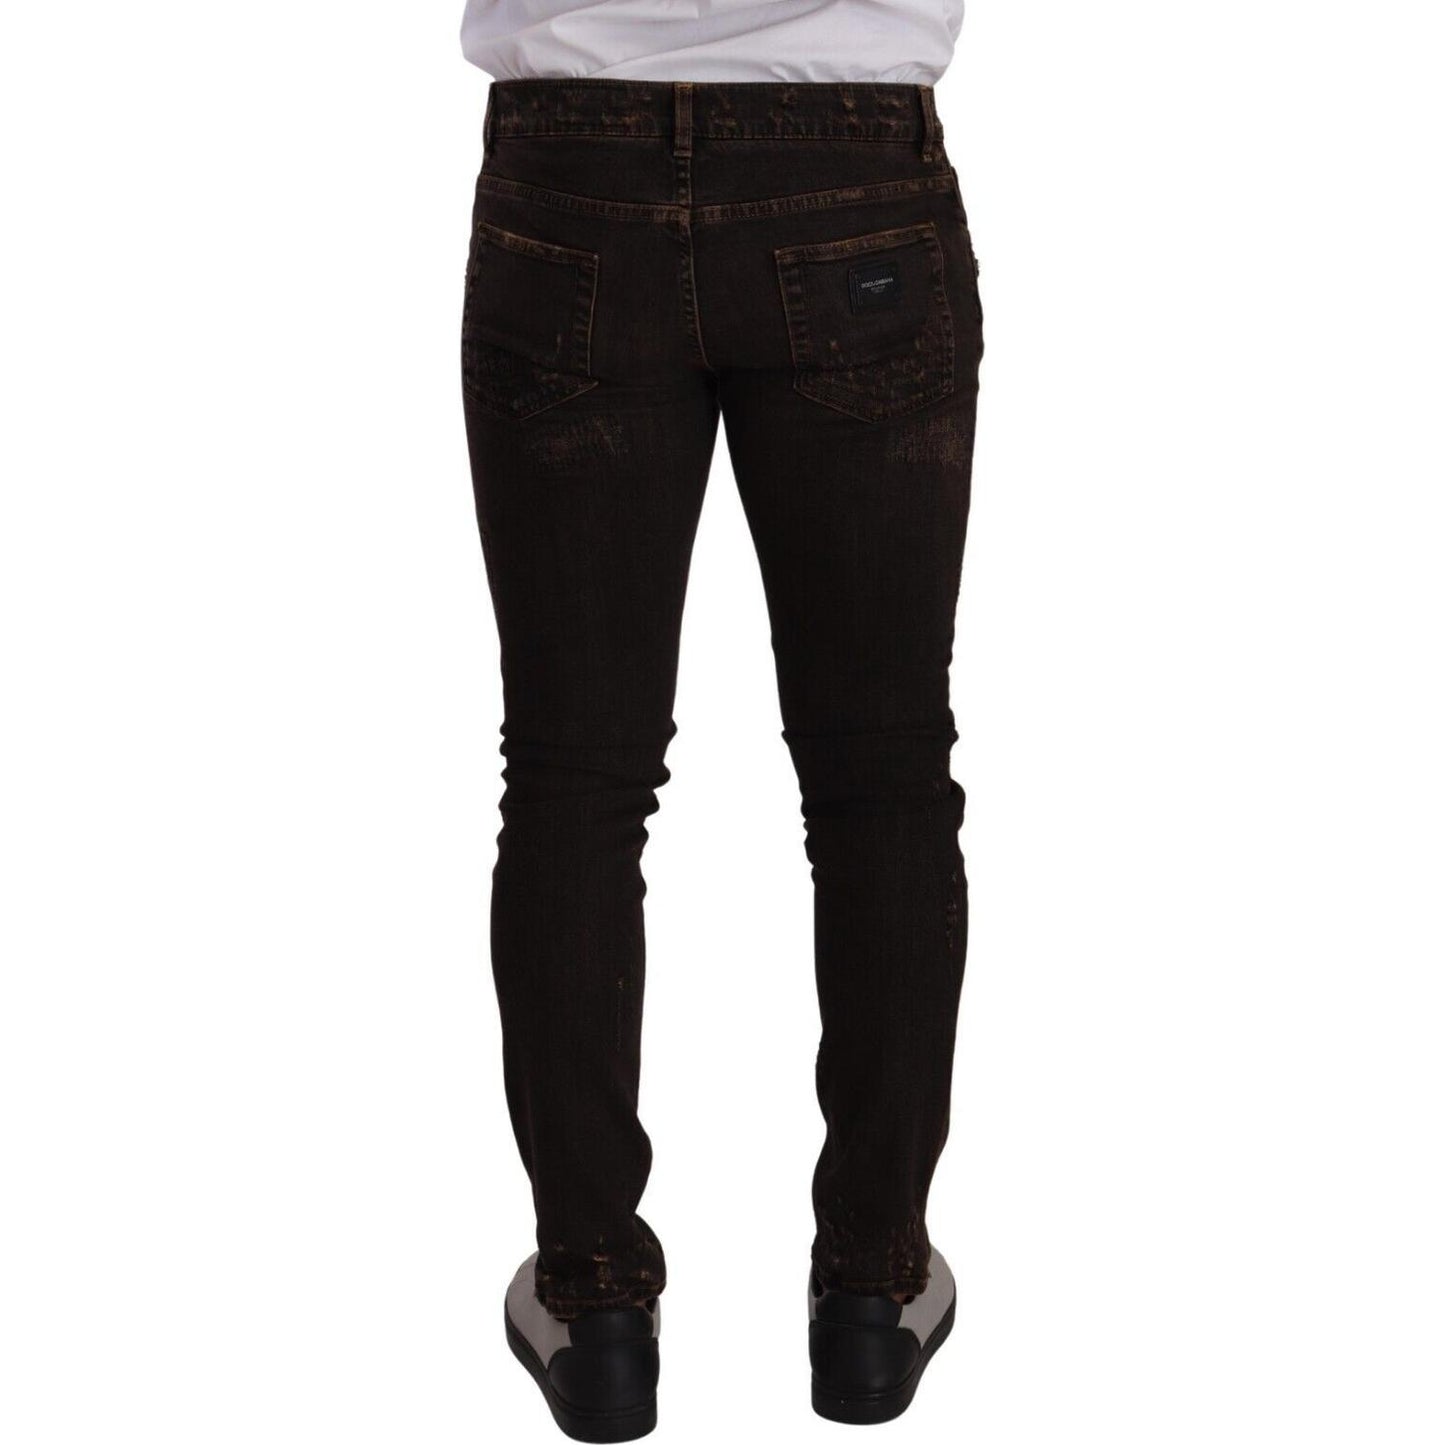 Dolce & Gabbana Slim Fit Distressed Skinny Denim Jeans brown-distressed-slim-fit-skinny-denim-jeans s-l1600-1-118-b114a597-7e1.jpg